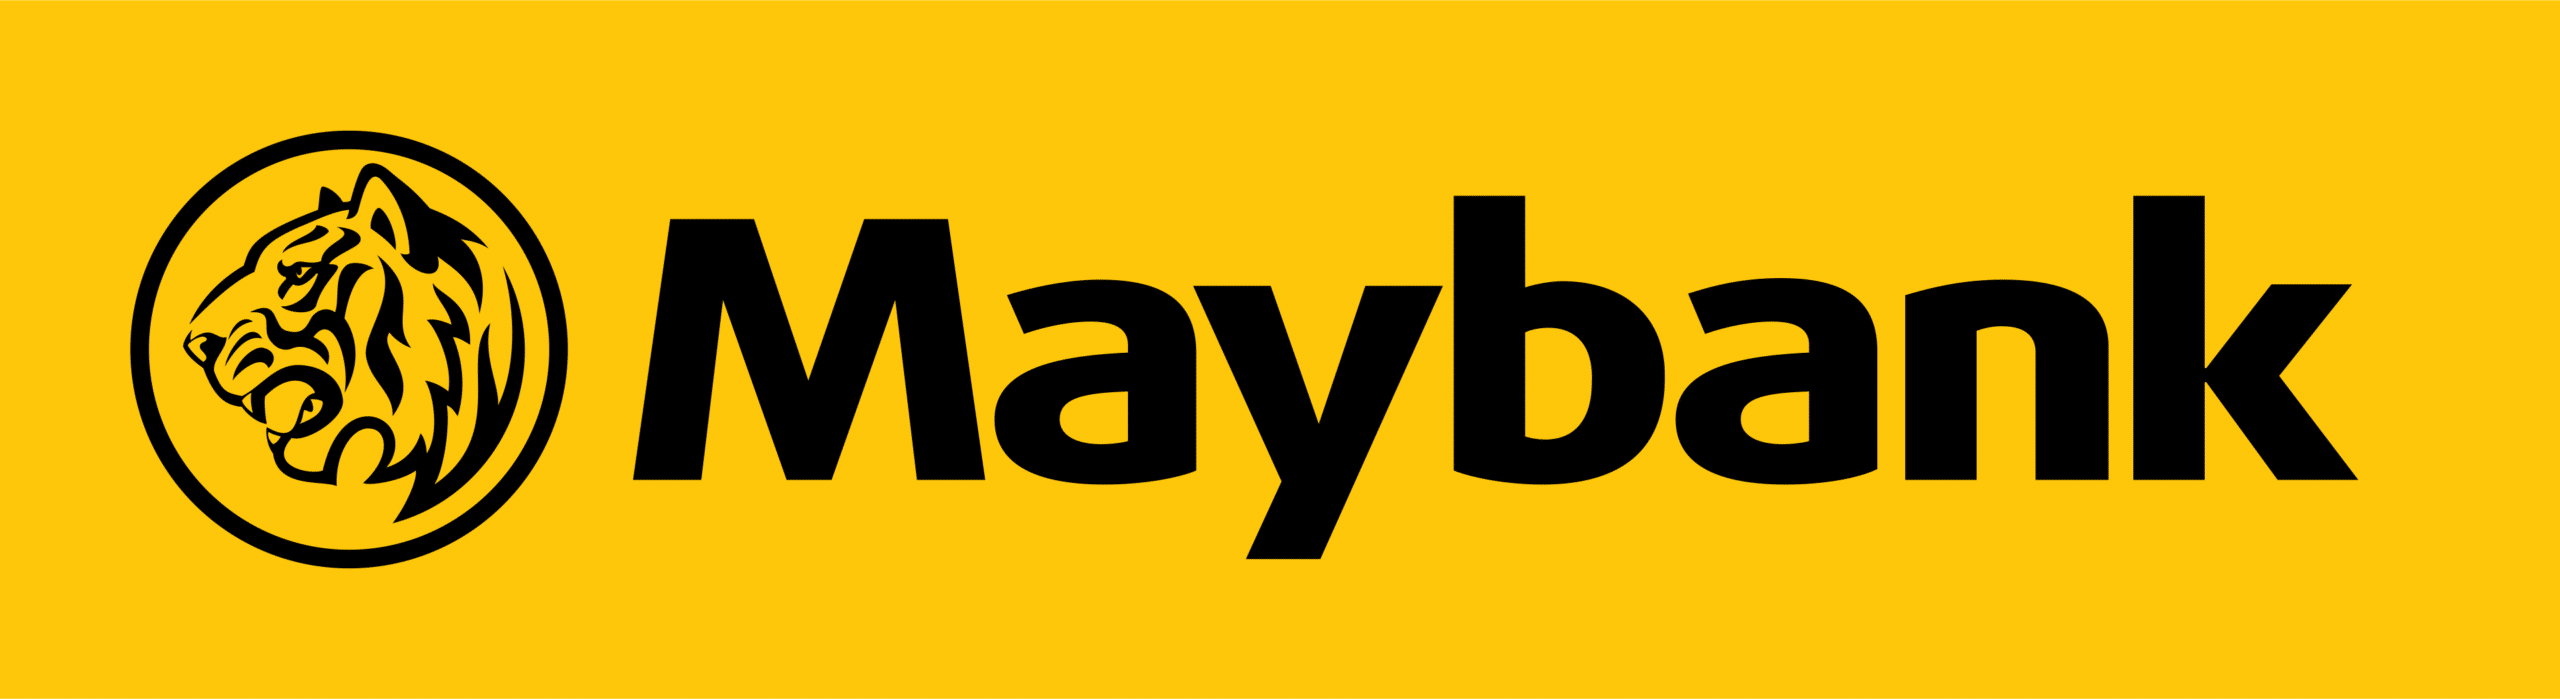 Maybank Virtual Account